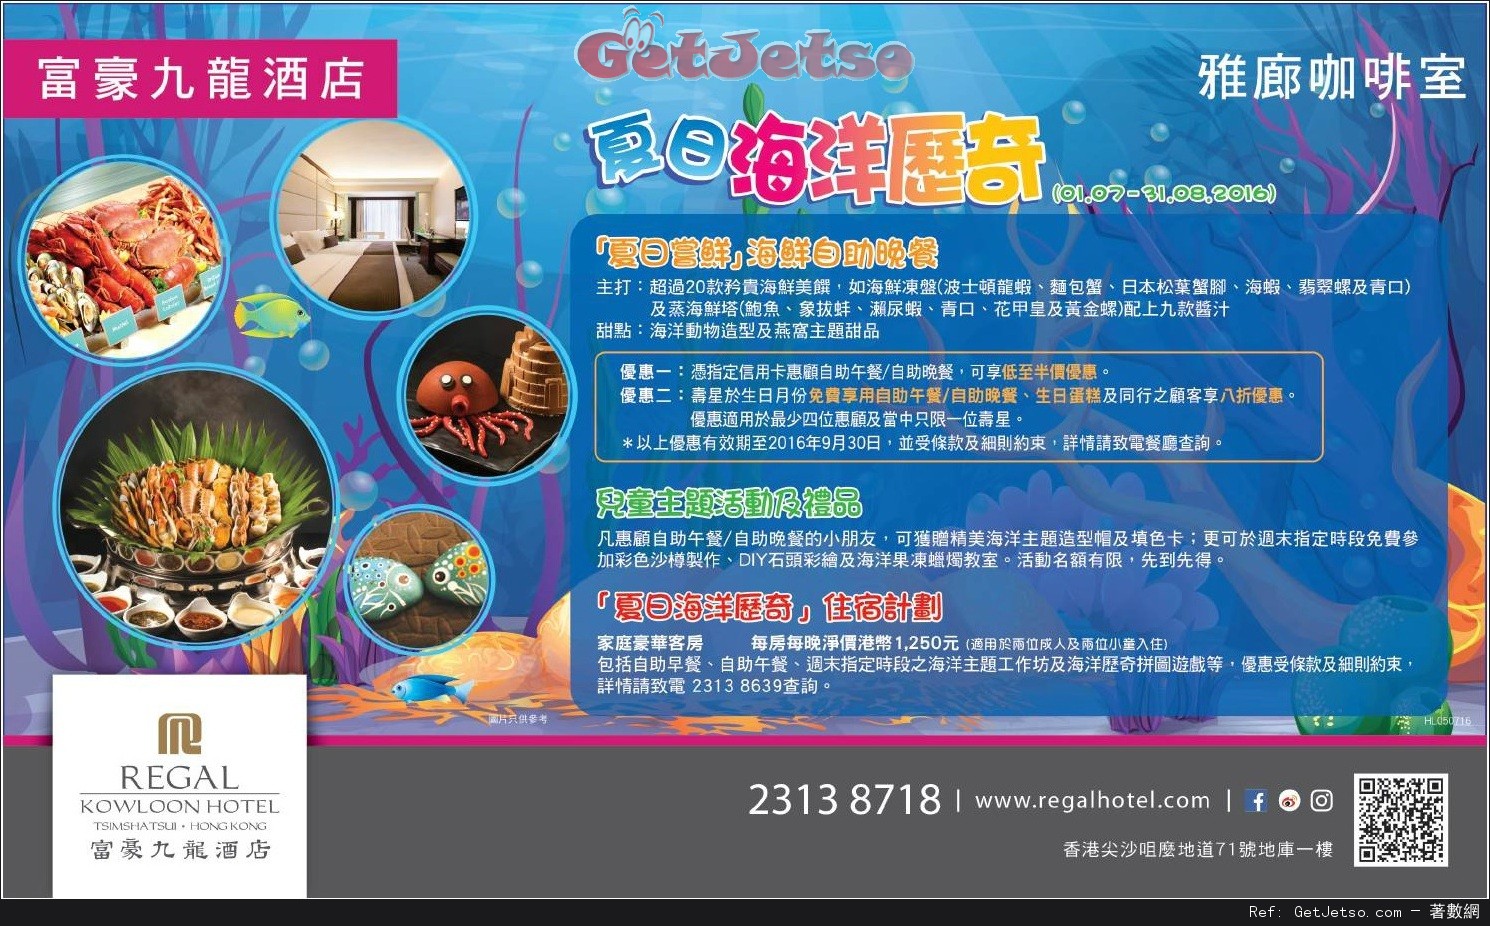 富豪九龍酒店生日享免費自助餐及生日蛋糕優惠(至16年9月30日)圖片1